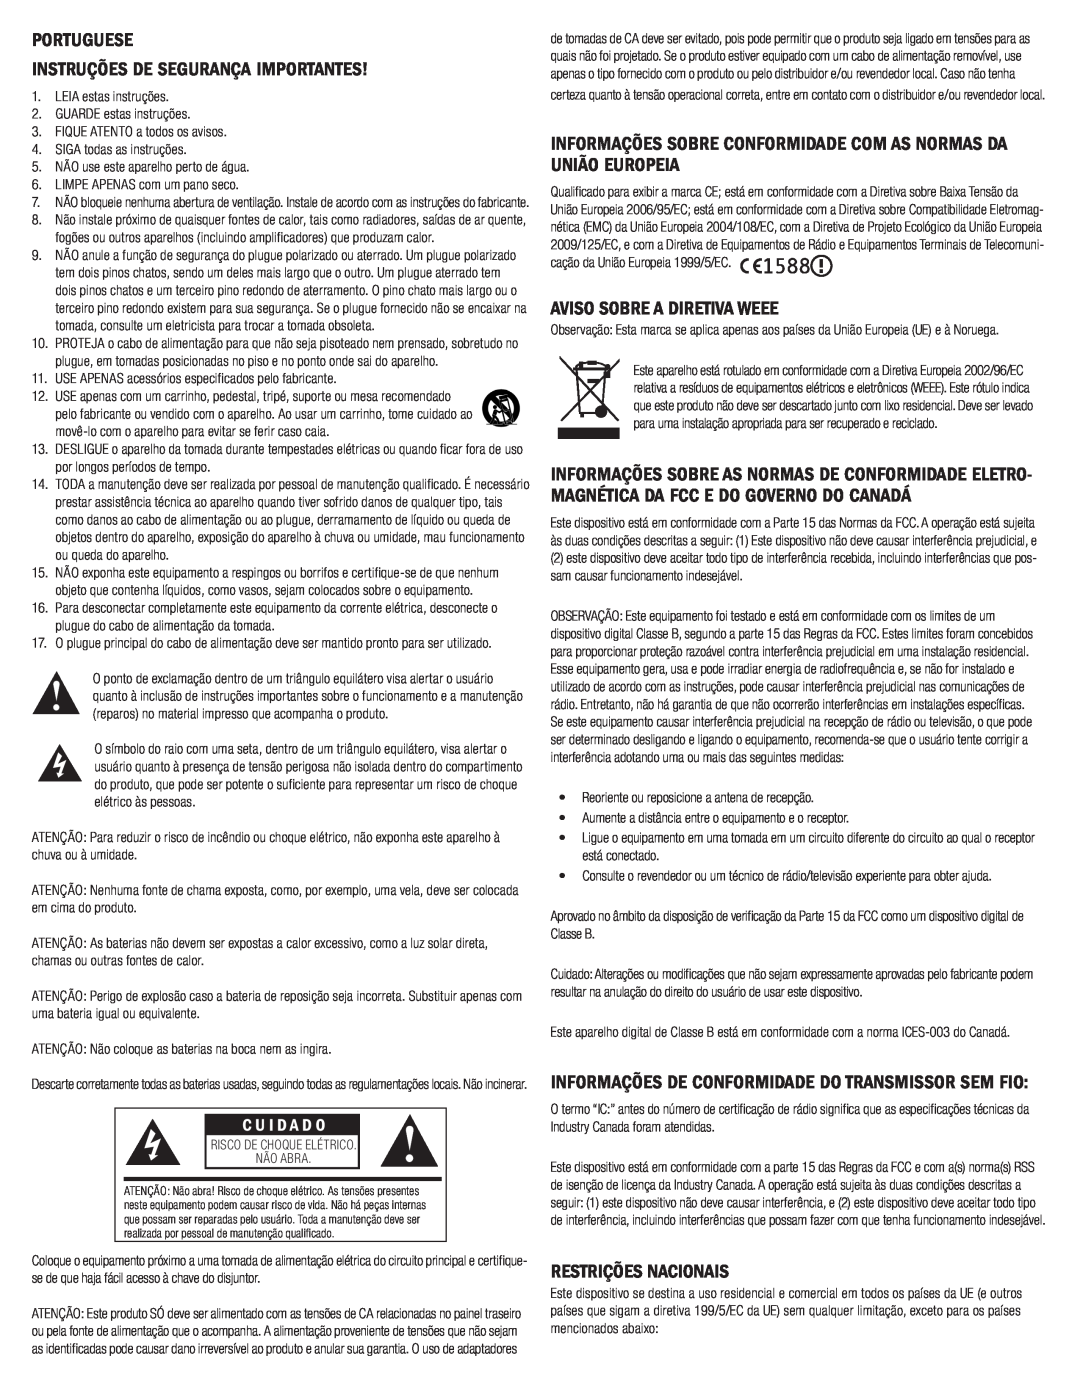 Klipsch G-17 AIR Portuguese Instruções De Segurança Importantes, Aviso Sobre A Diretiva Weee, Restrições Nacionais 